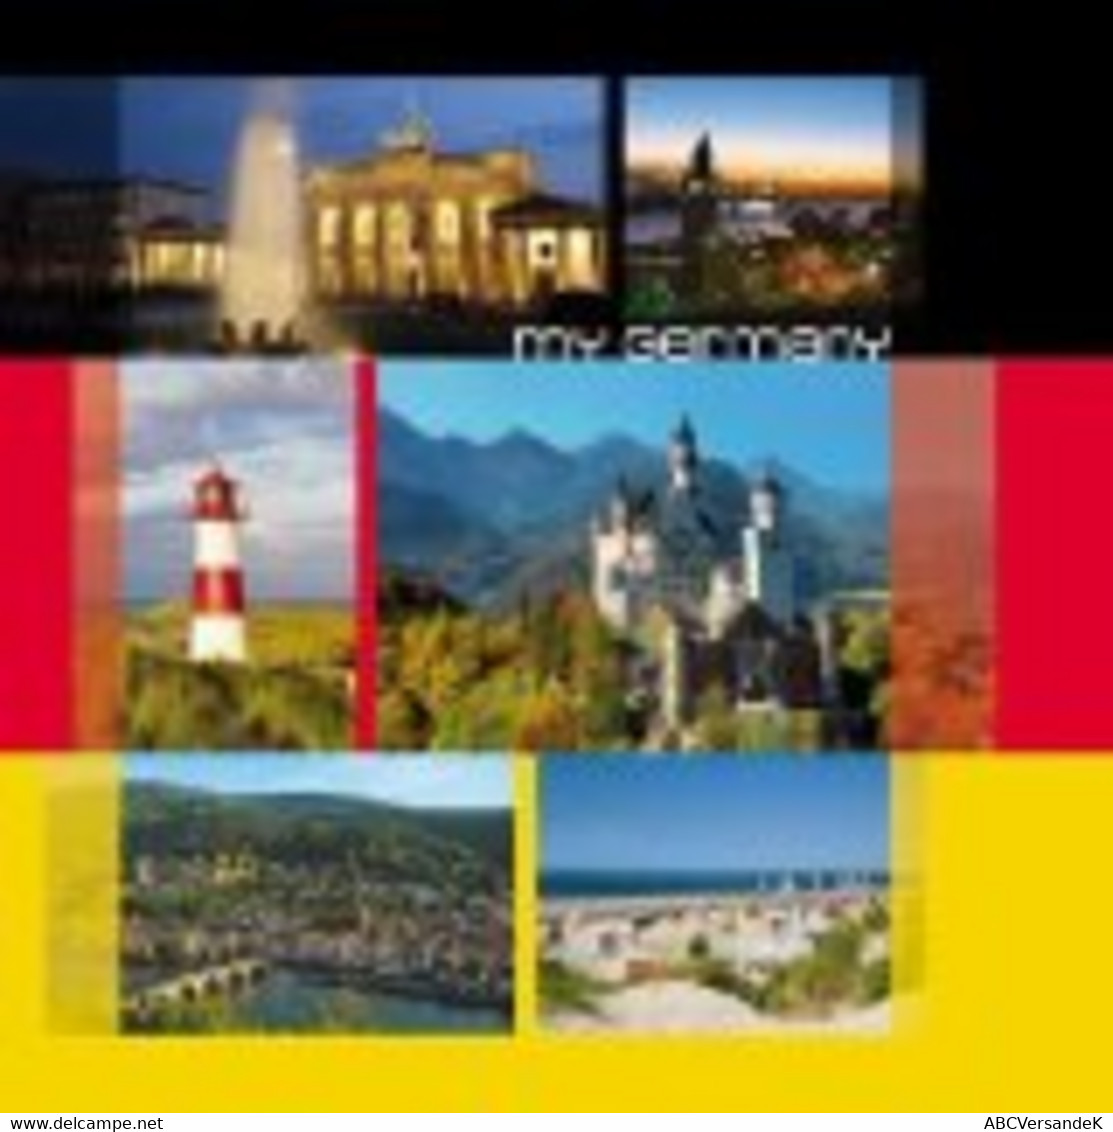 My Germany - Fotografía